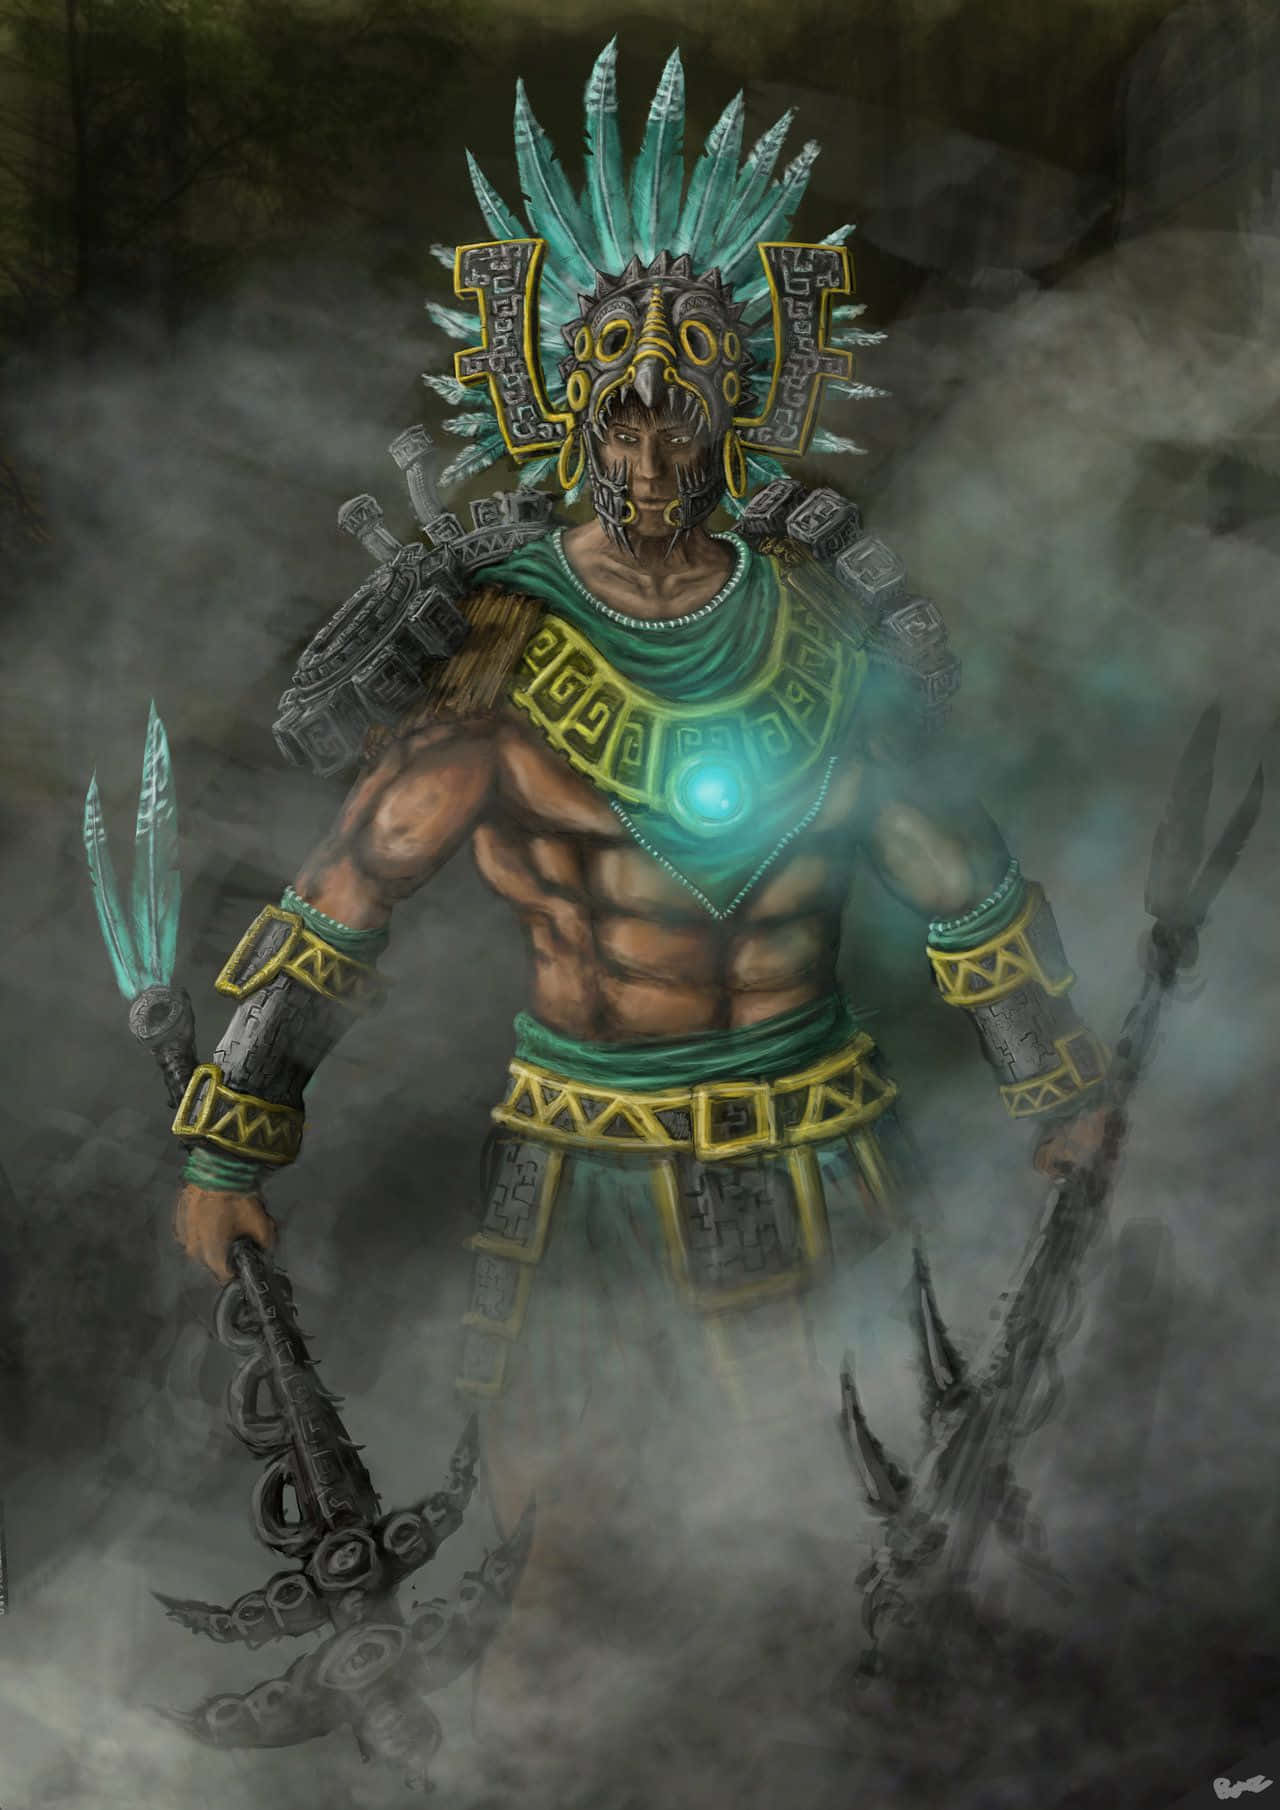 Umguerreiro Asteca Provocando Seu Inimigo. Papel de Parede